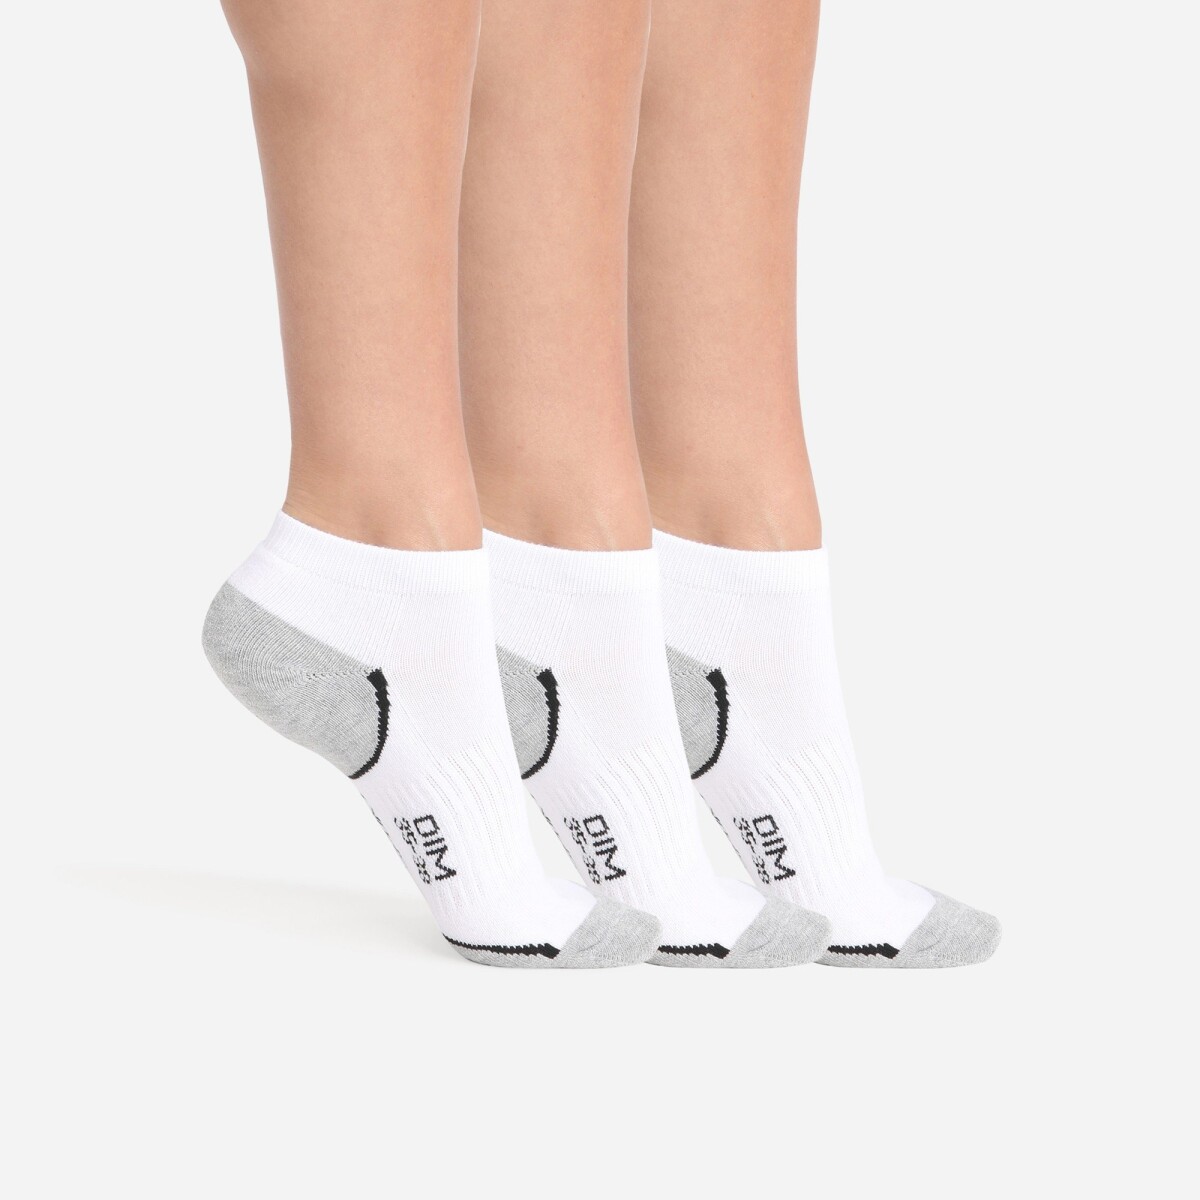 Blancheporte Sada 3 párů sportovních ponožek DIM bílášedá 3538